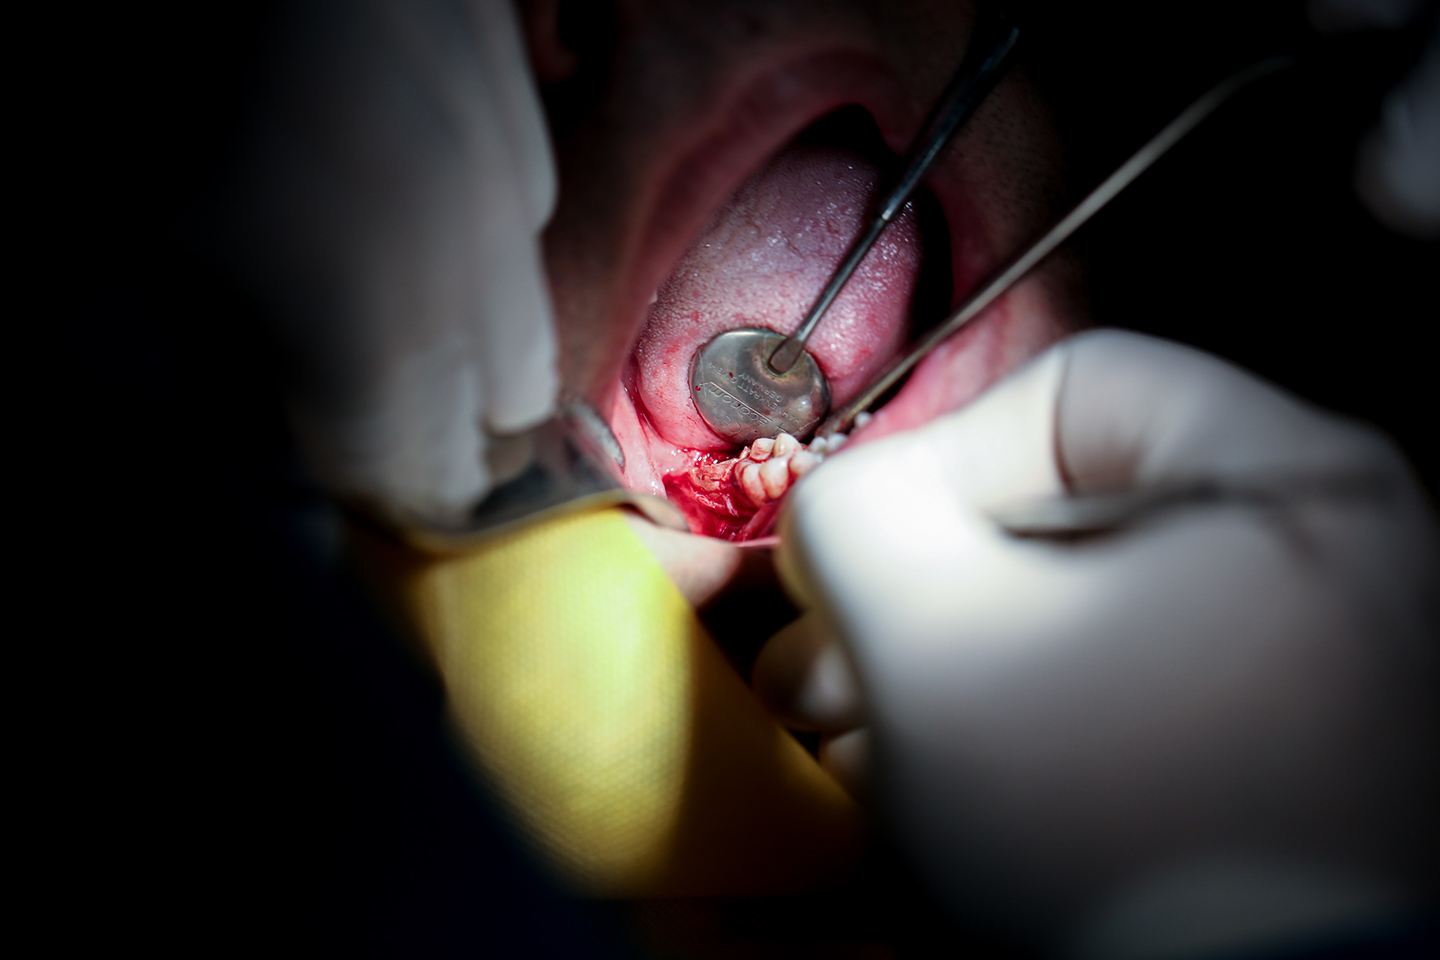 کلینیک تخصصی دندانپزشکی جهاددانشگاهی مشهد